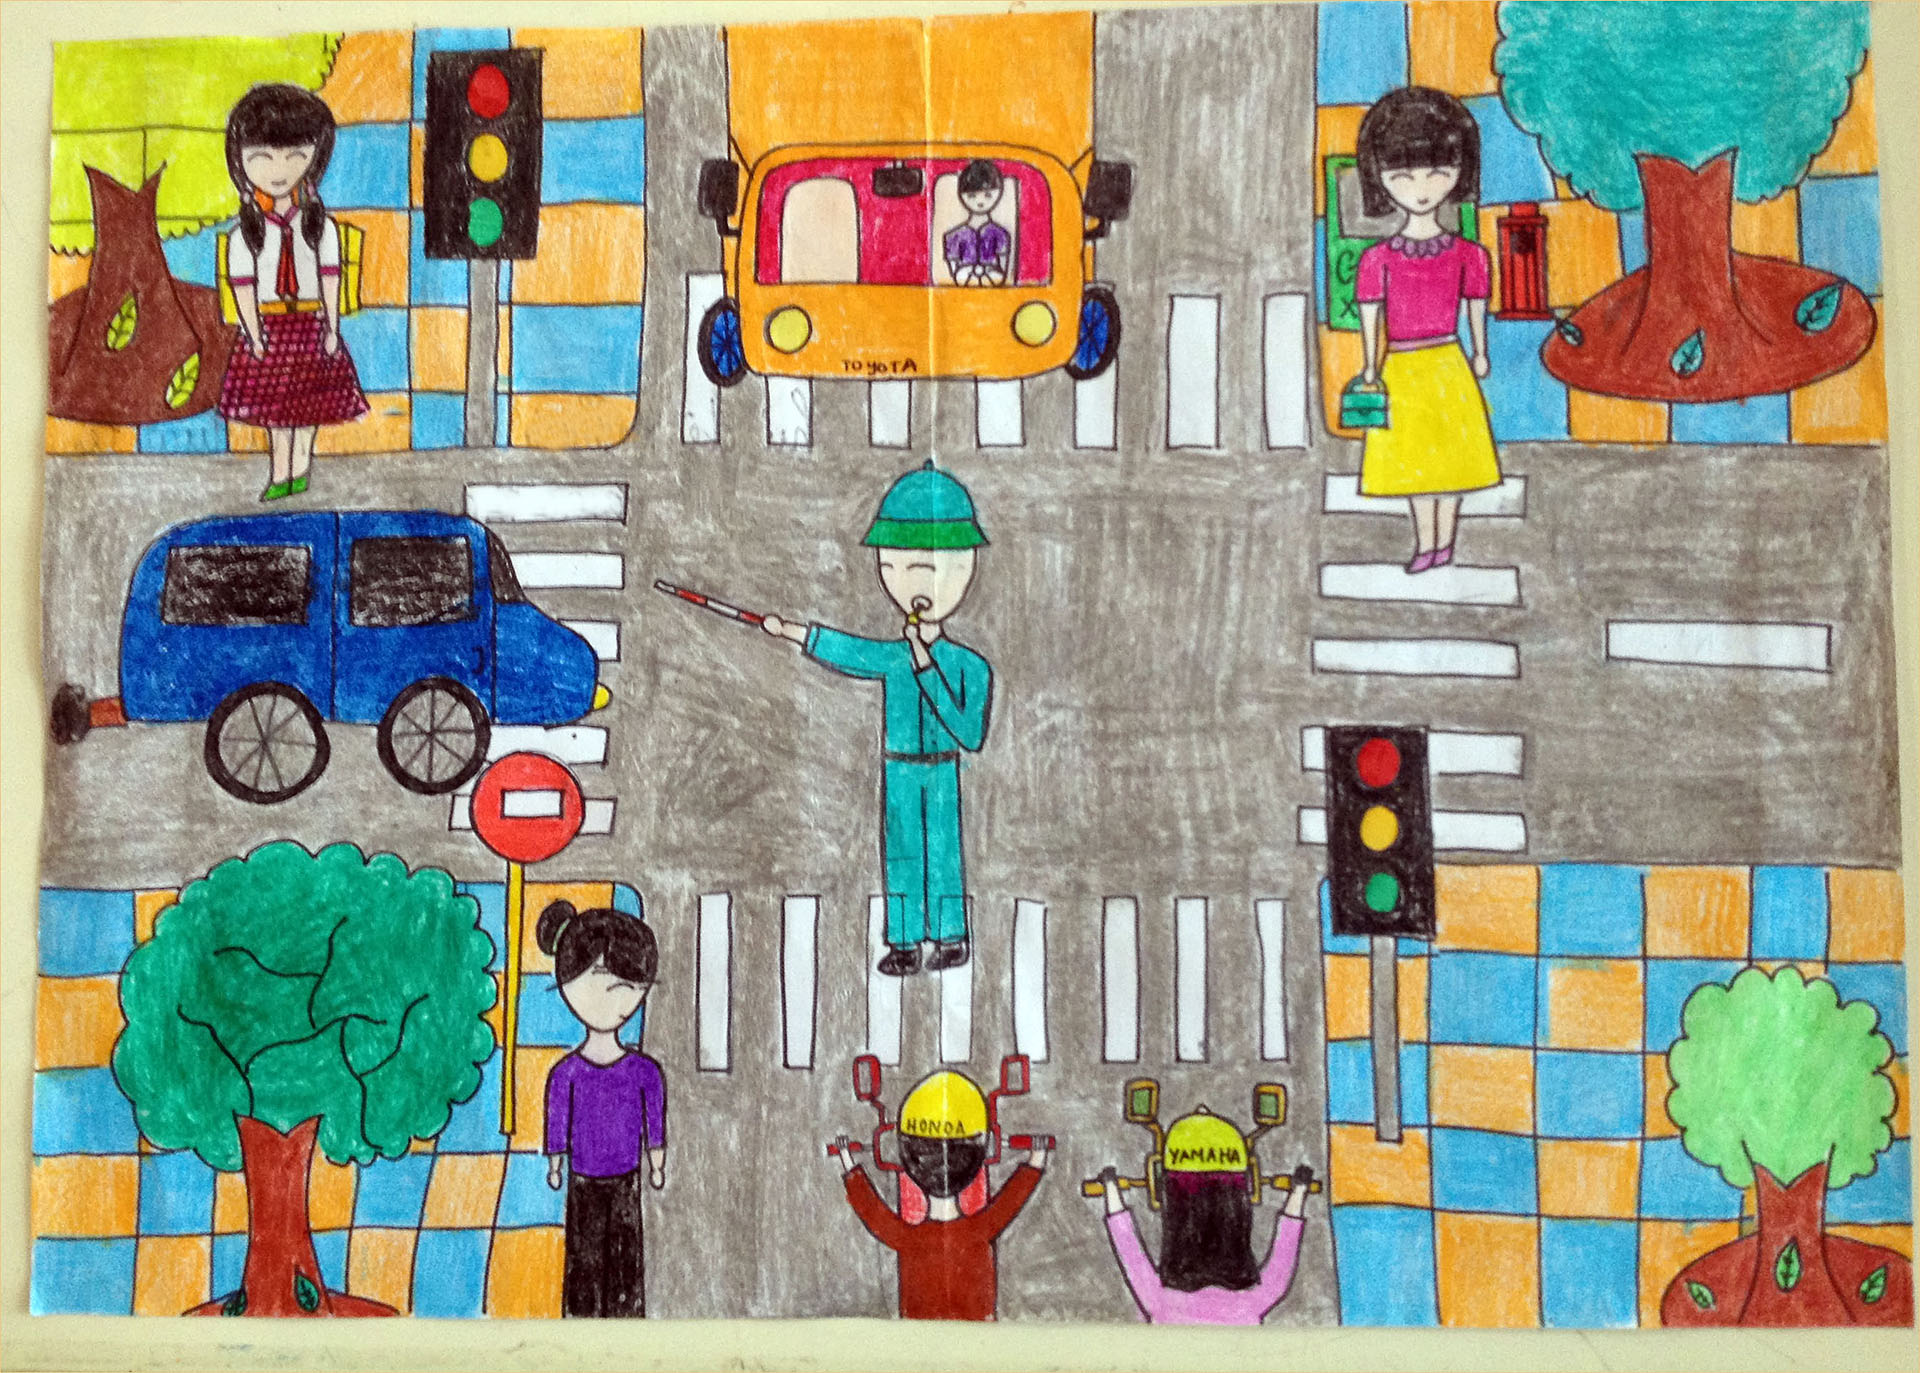 Cách vẽ tranh đề tài an toàn giao thông đơn giản mà đẹp các khối lớp